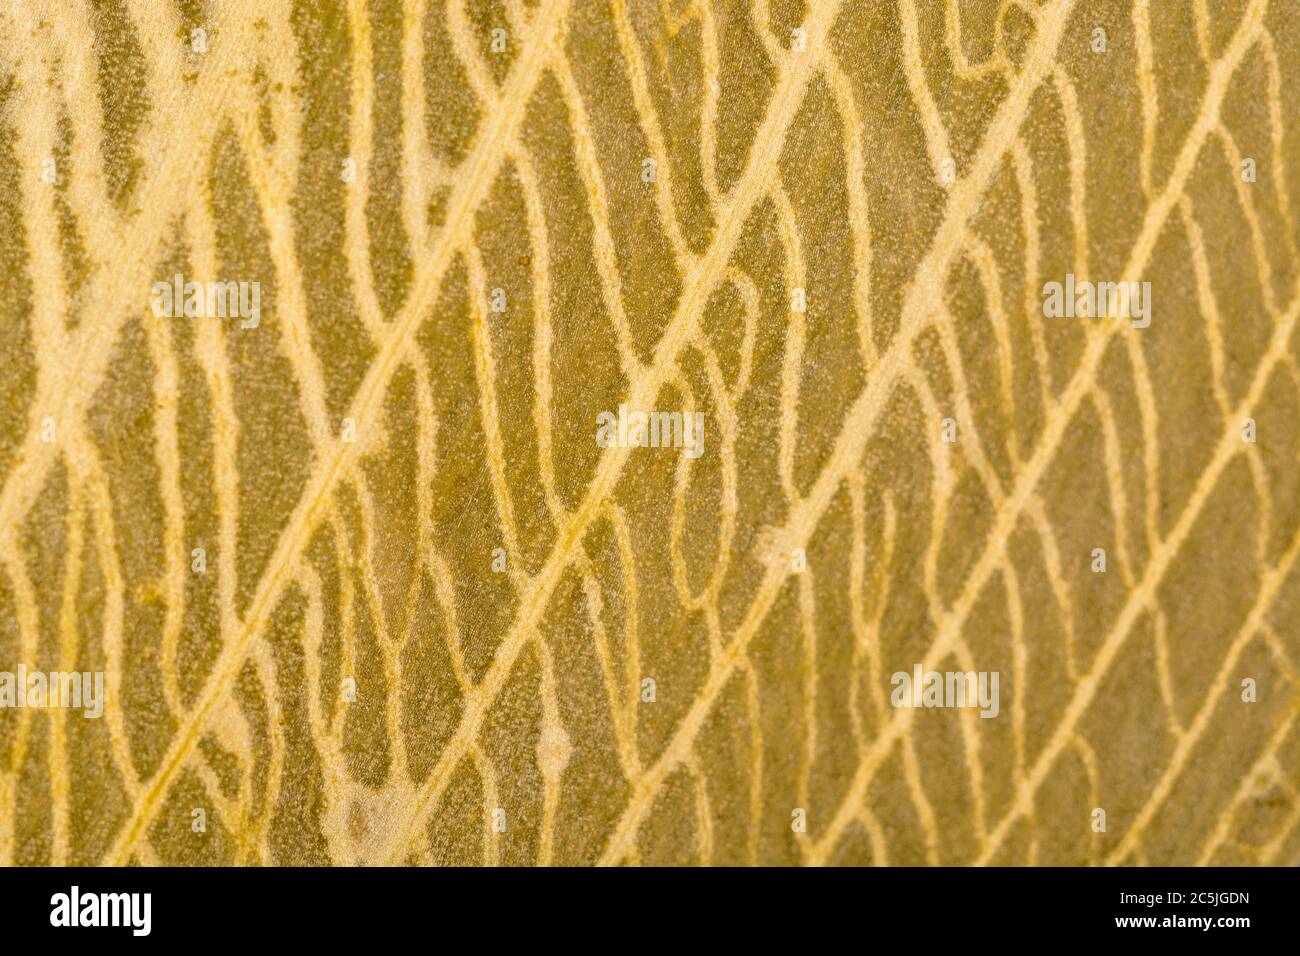 Gros plan extrême de la feuille d'Allium ursinum / Ramsons en décomposition, en décomposition, montrant des détails complexes de la structure de la veine morte. Décomposition de la matière foliaire. Banque D'Images